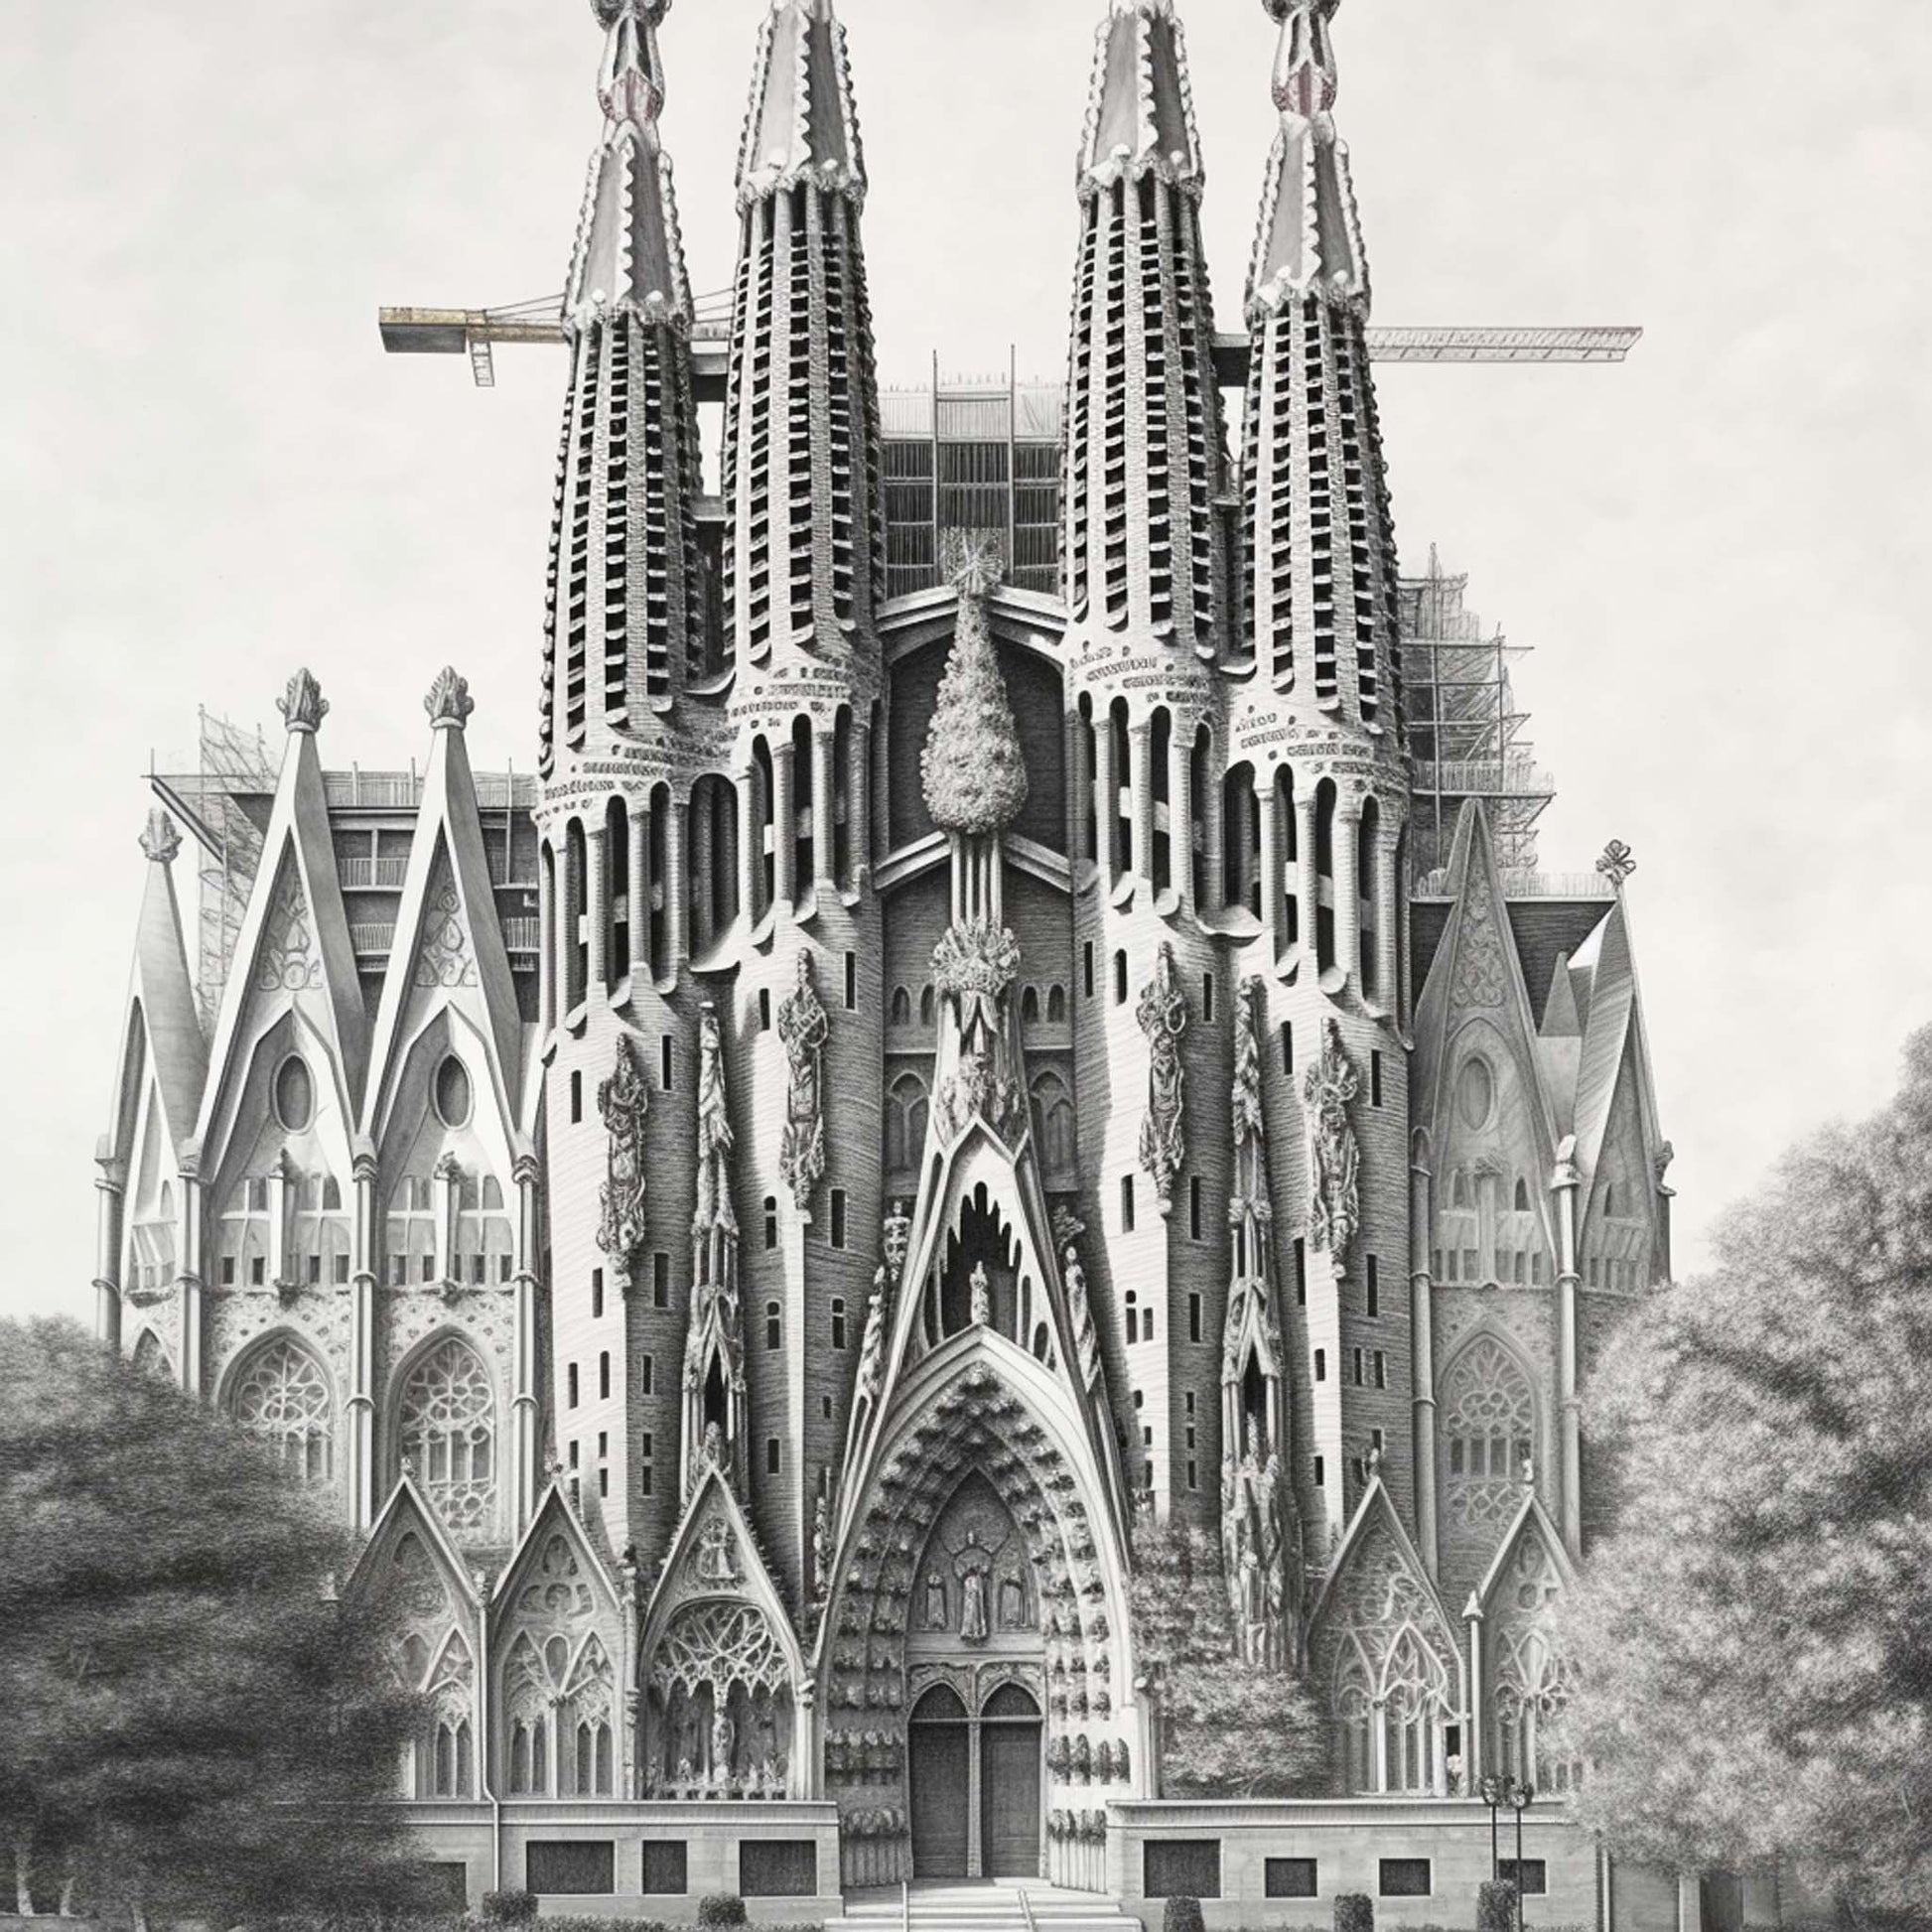 Urbanisto - Barcelona Sagrada Familia - Wandbild als Schwarz-Weiß-Zeichnung